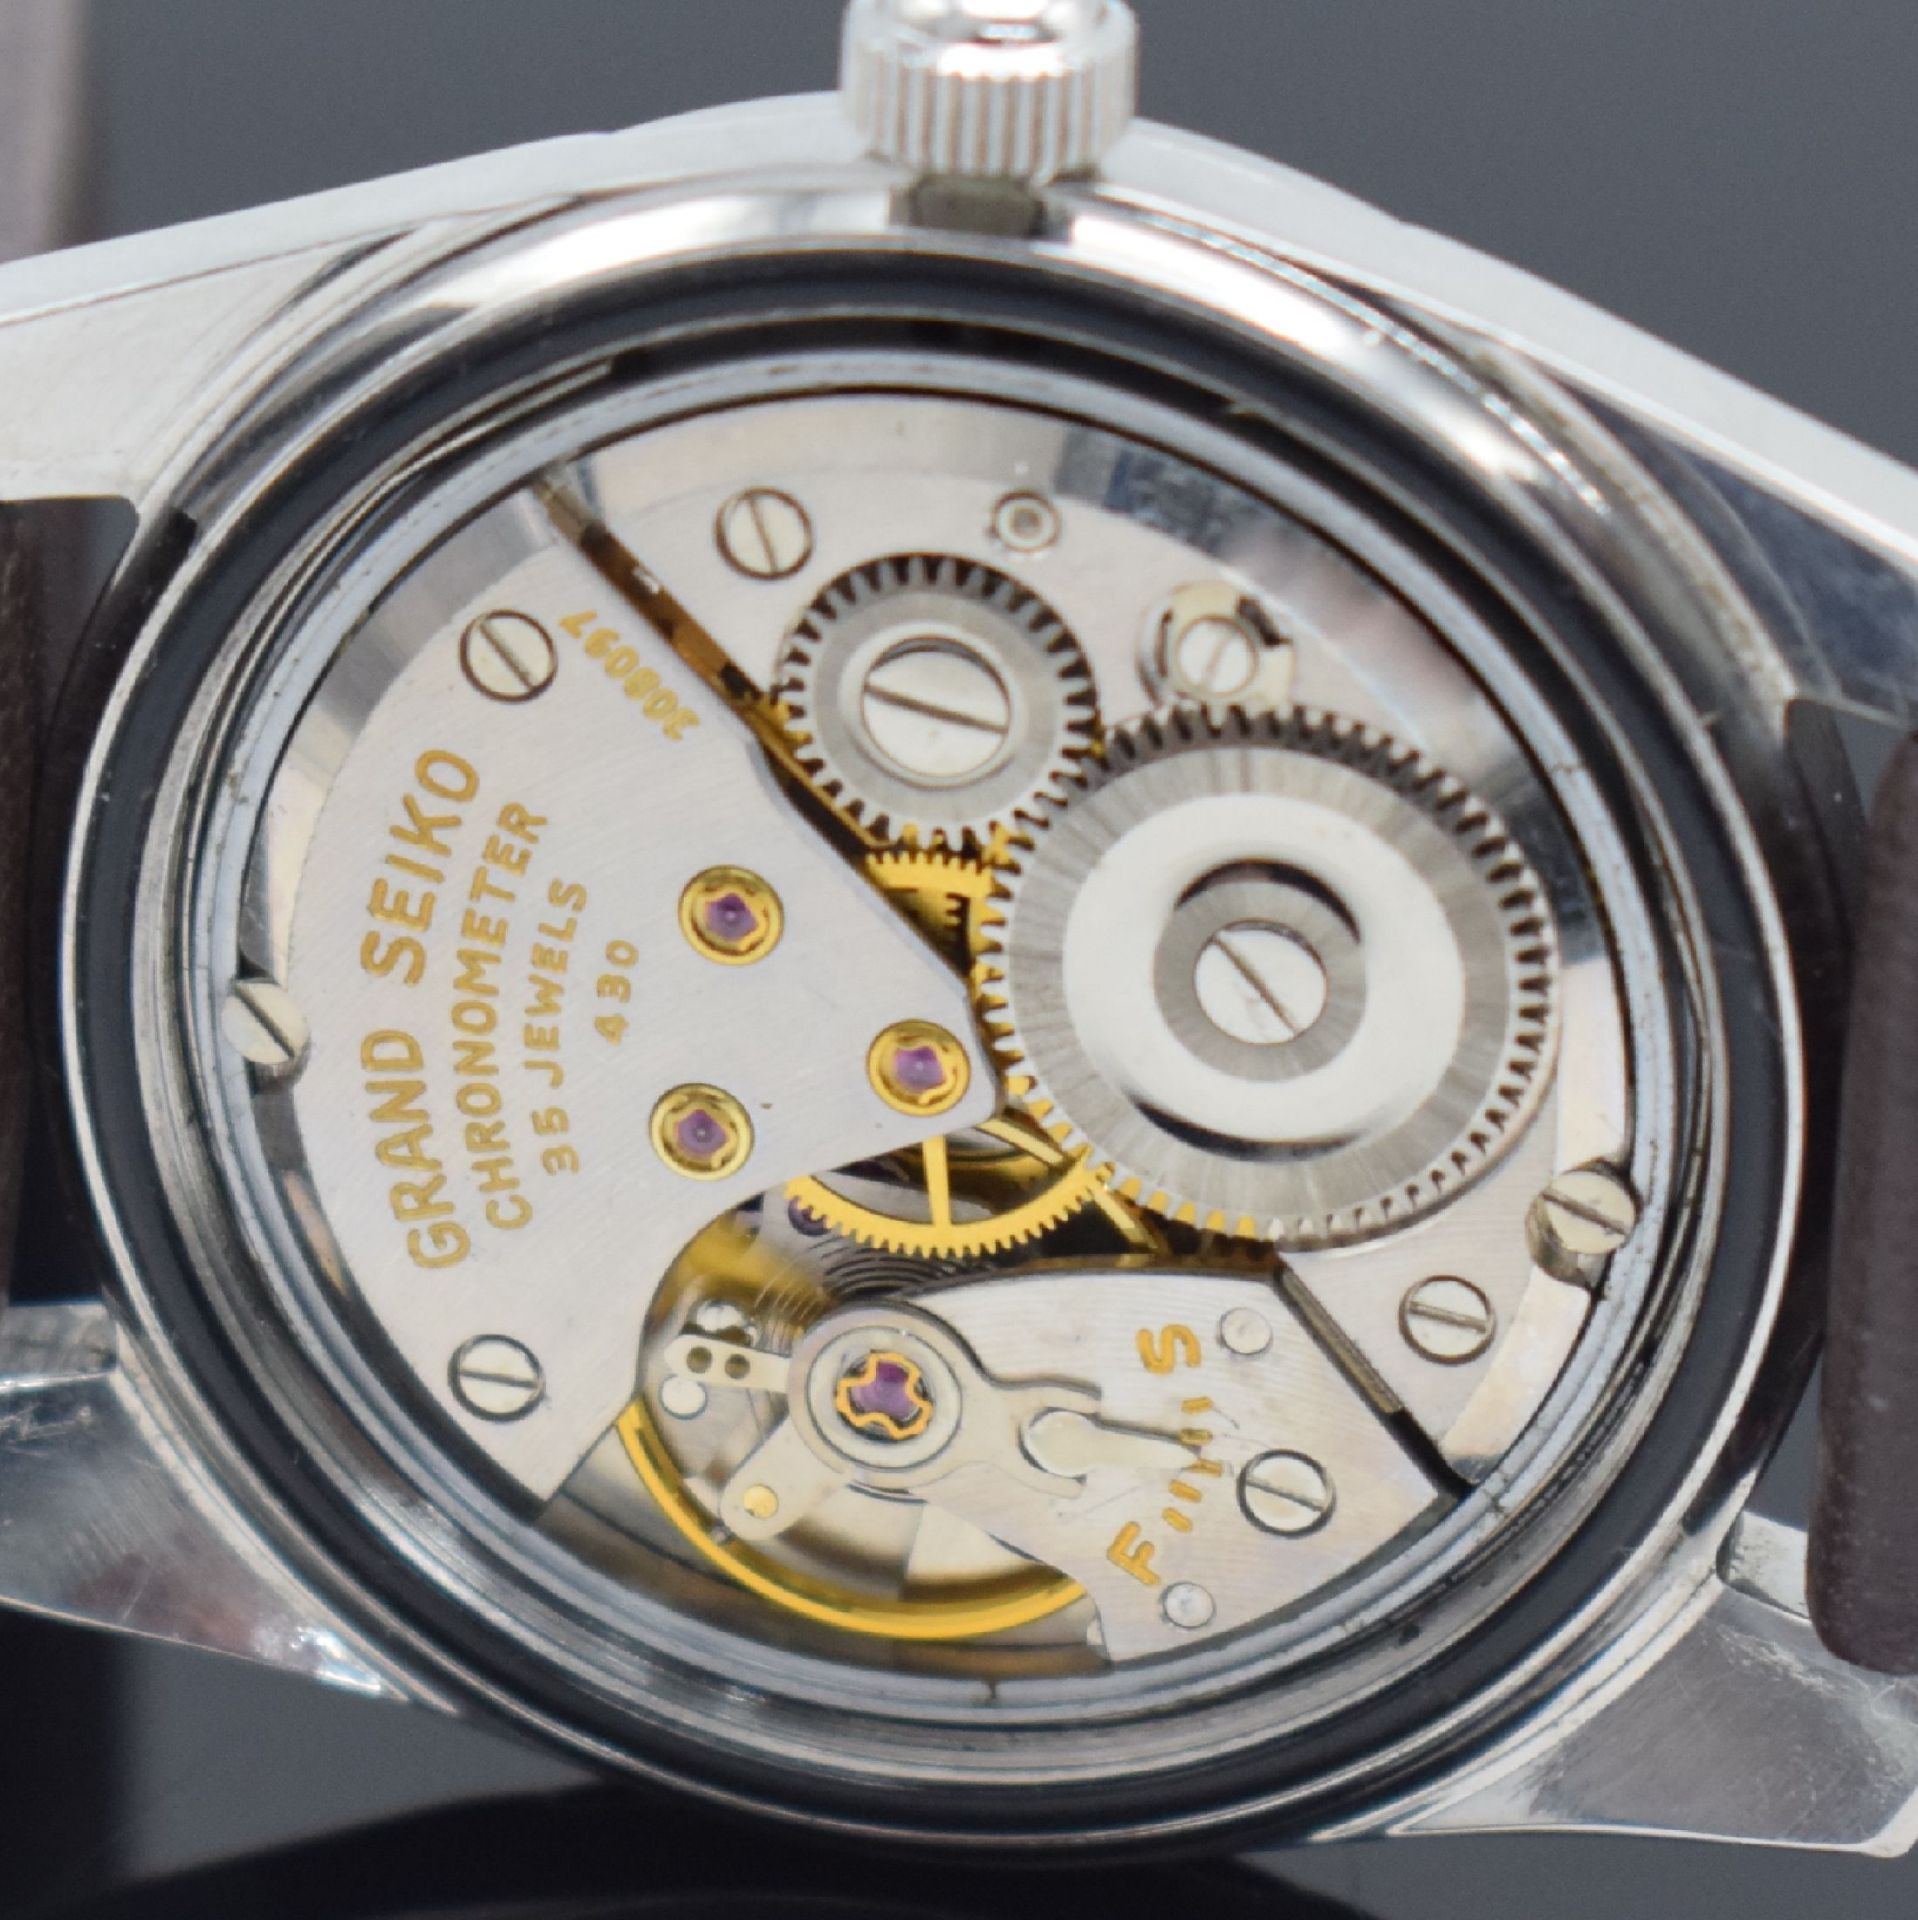 GRAND SEIKO Chronometer seltene große Herrenarmbanduhr - Image 7 of 9